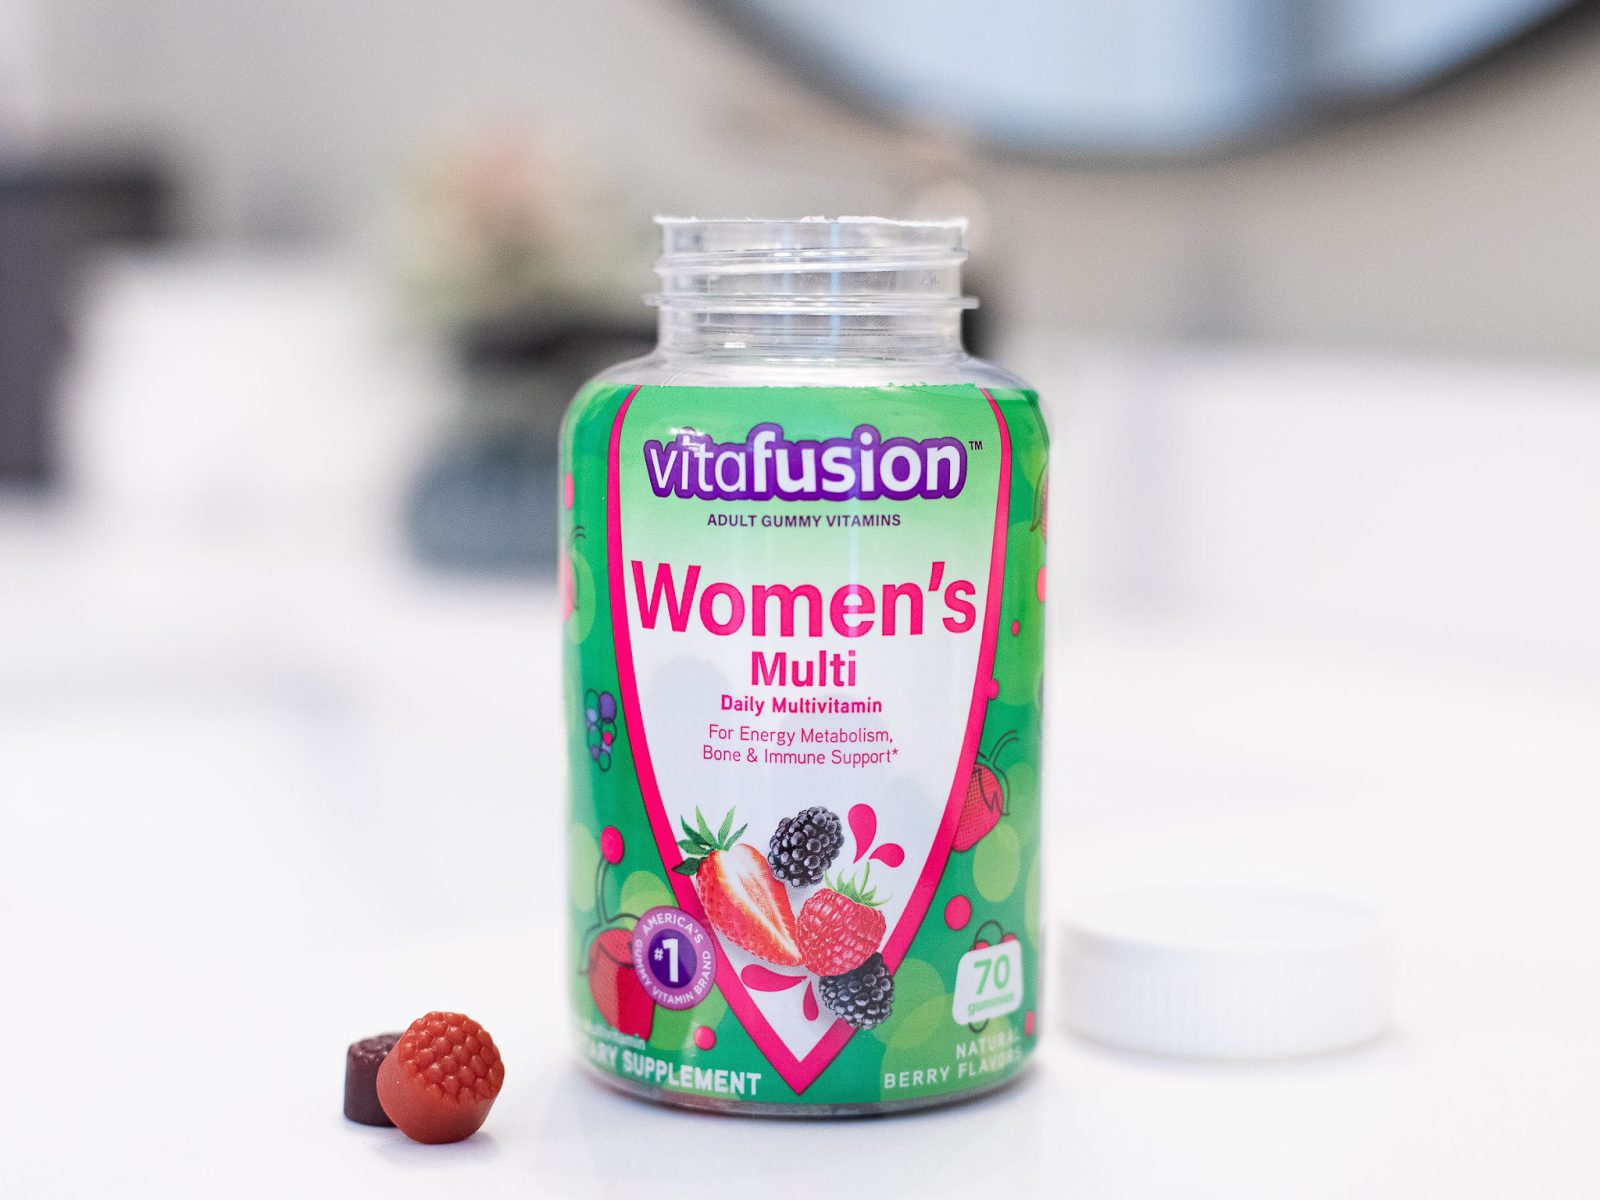 Vitafusion Gummy Vitamins As Low As $3.14 At Publix